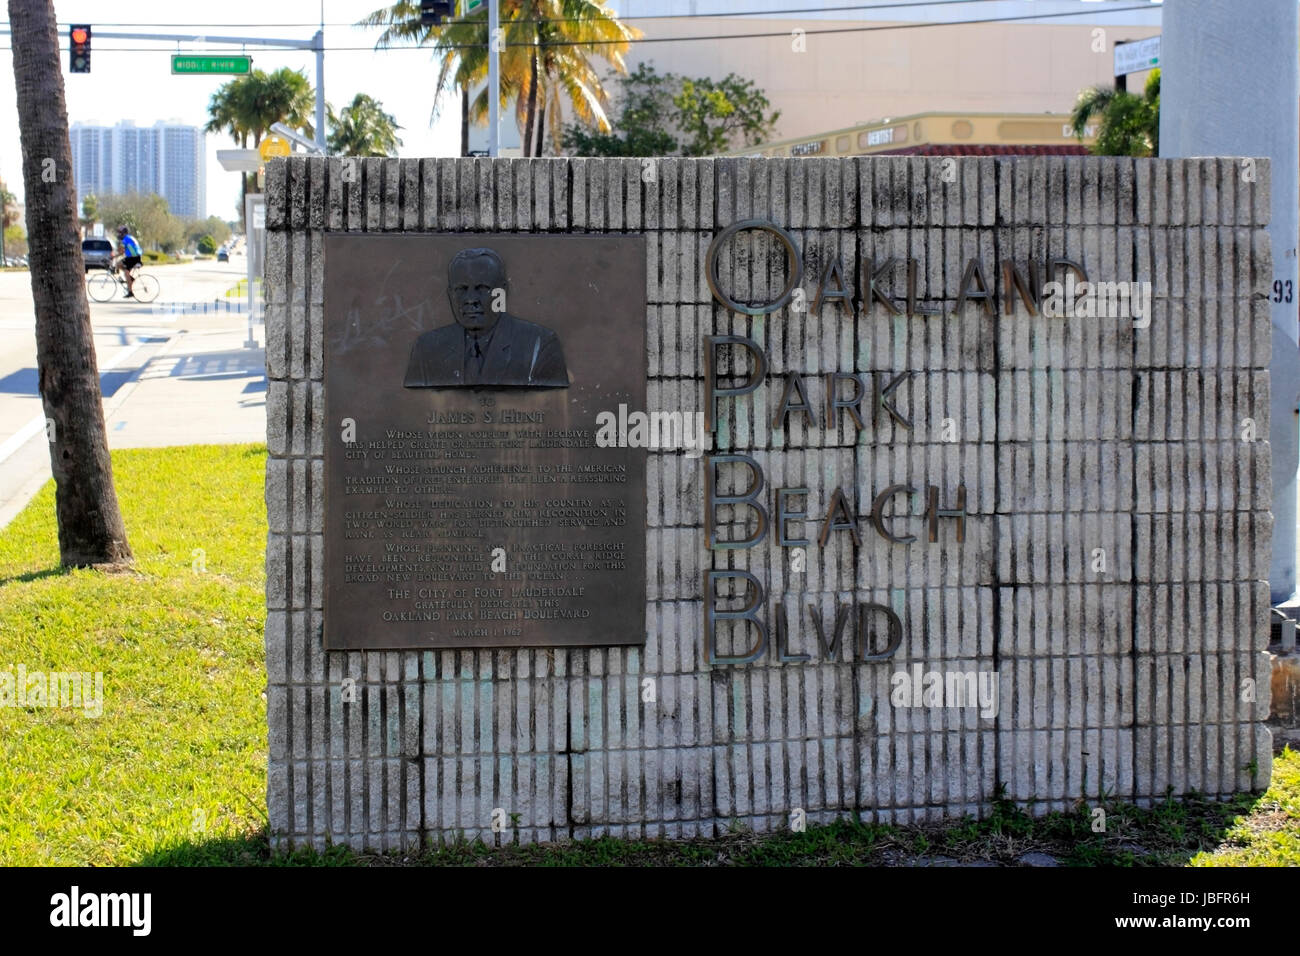 FORT LAUDERDALE, Florida - El 14 de febrero de 2014: Metal Oakland Park Beach Blvd firmar con entrega información de fondo y la imagen de la placa S James Hunt en un muro de hormigón gris. Foto de stock